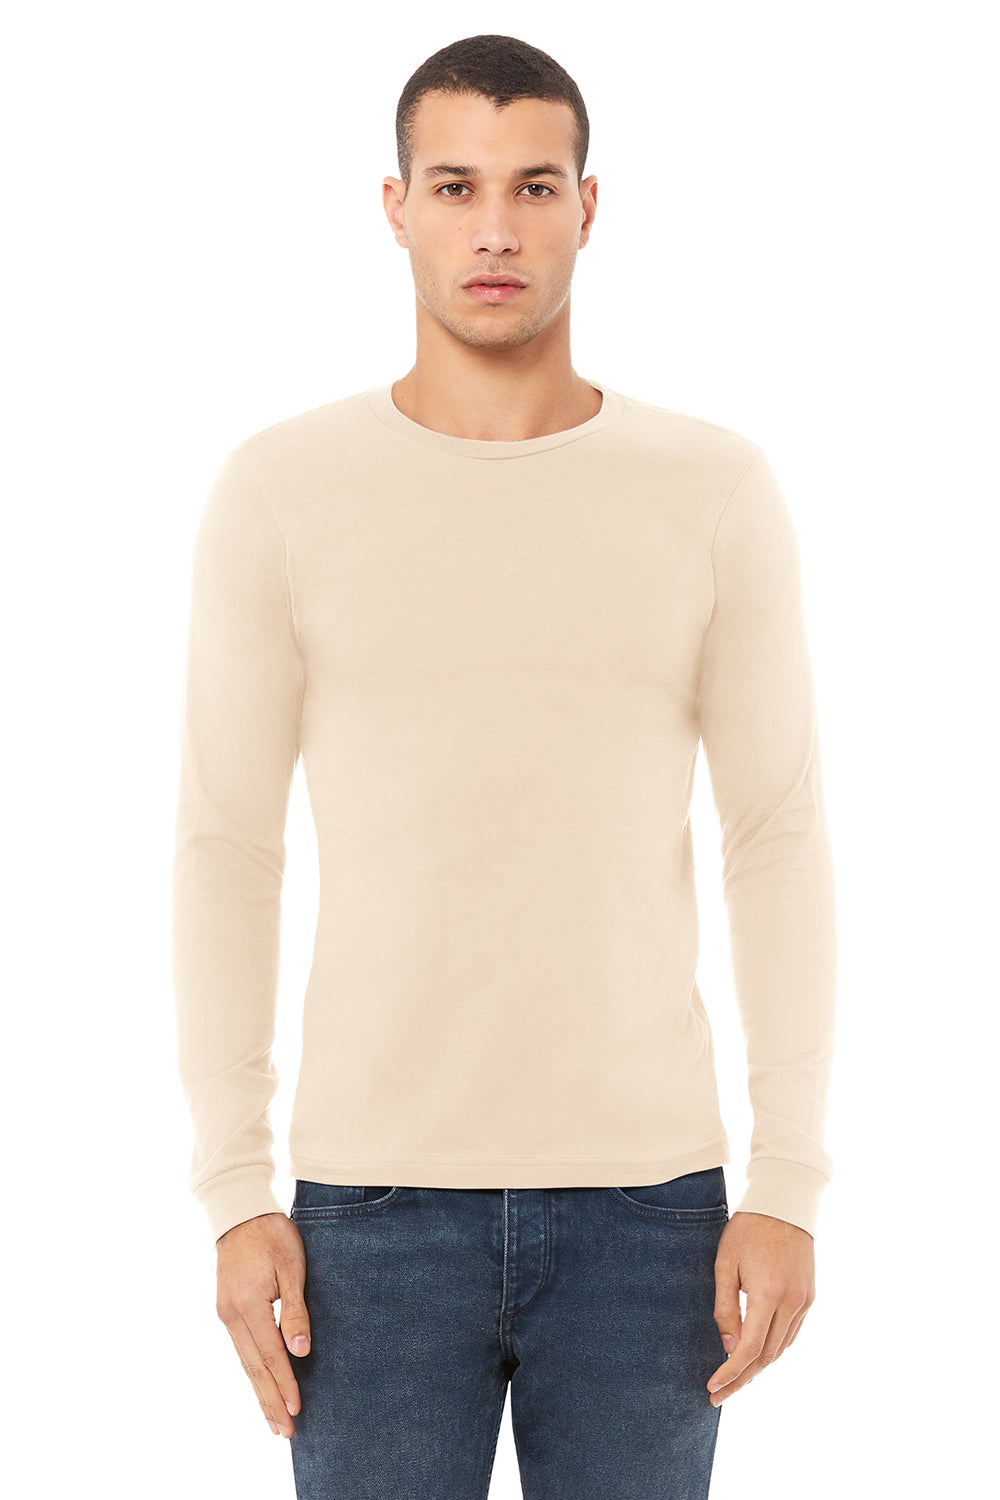 Bella + Canvas BC3501/3501 Mens Jersey Long Sleeve Crewneck T-Shirt Natural Model Front